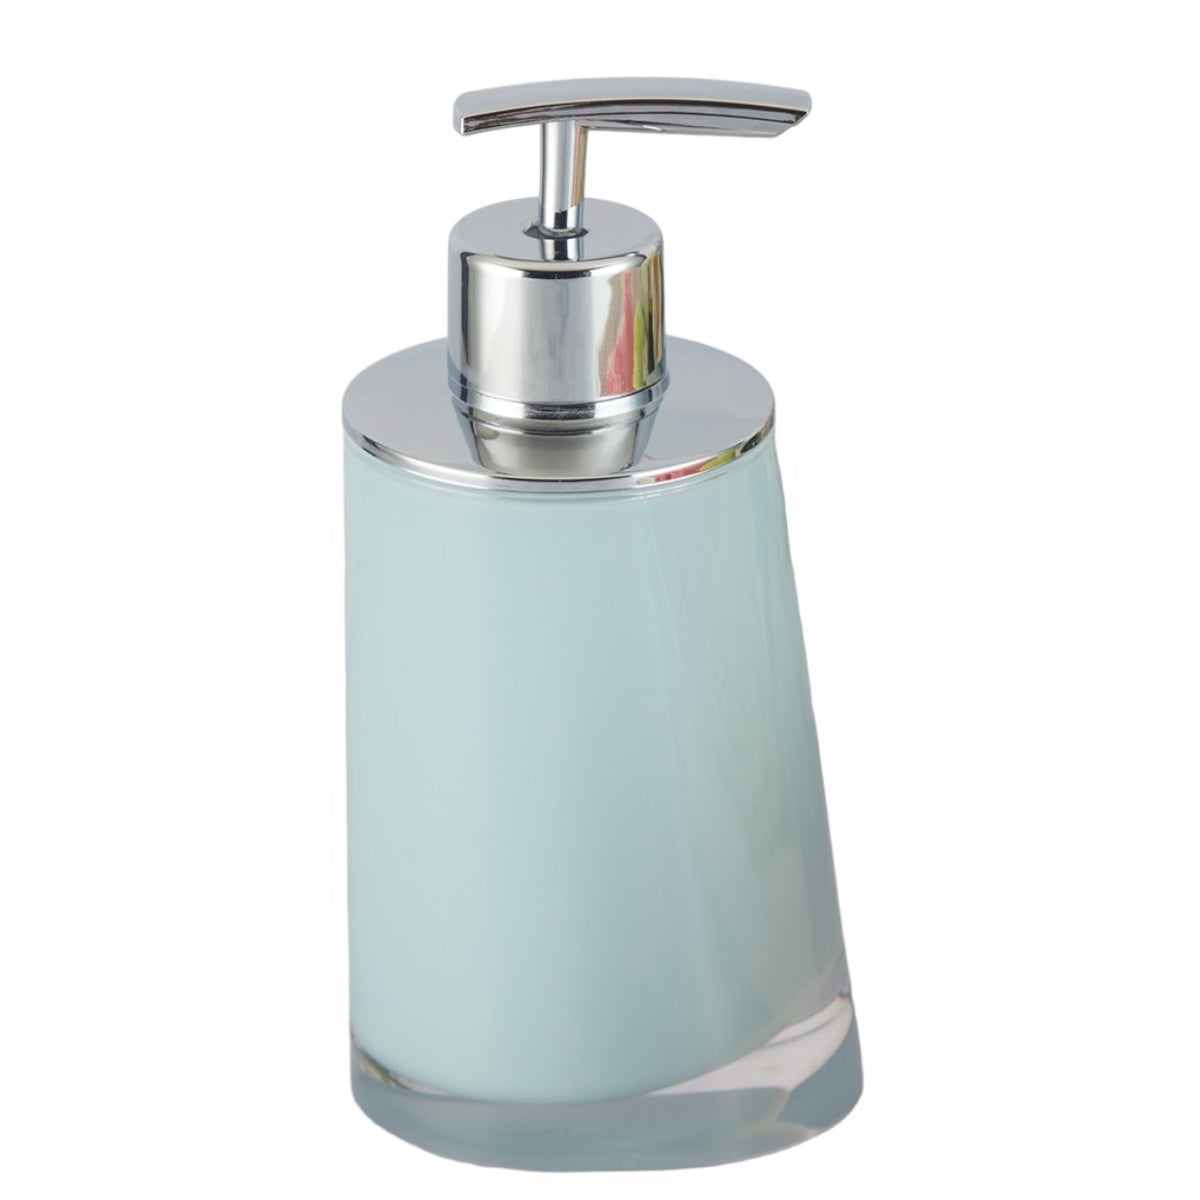 Acrylic Soap Dispenser Pump for Bathroom for Bath Gel, Lotion, Shampoo (9944)